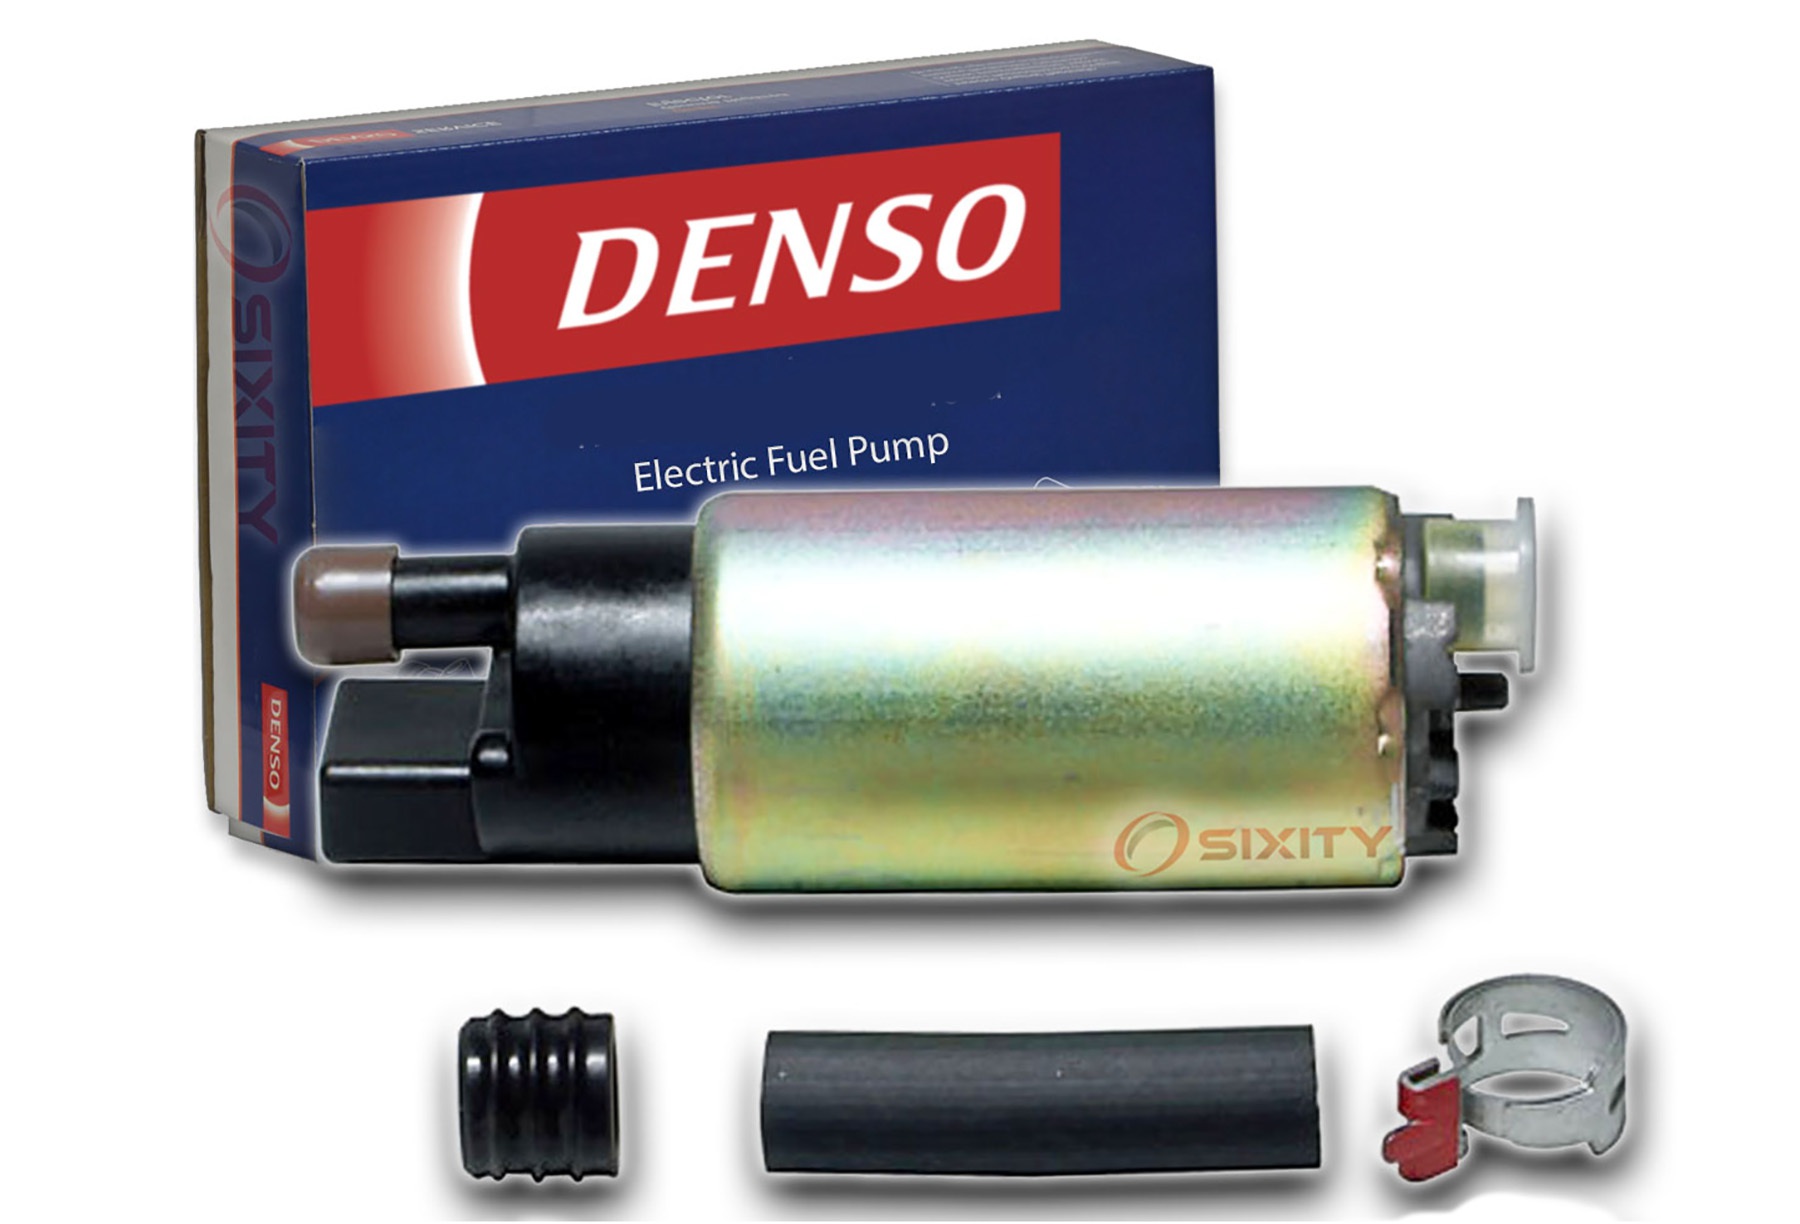  Hàng triệu xe dùng bơm nhiên liệu của Denso cần được triệu hồi - 1